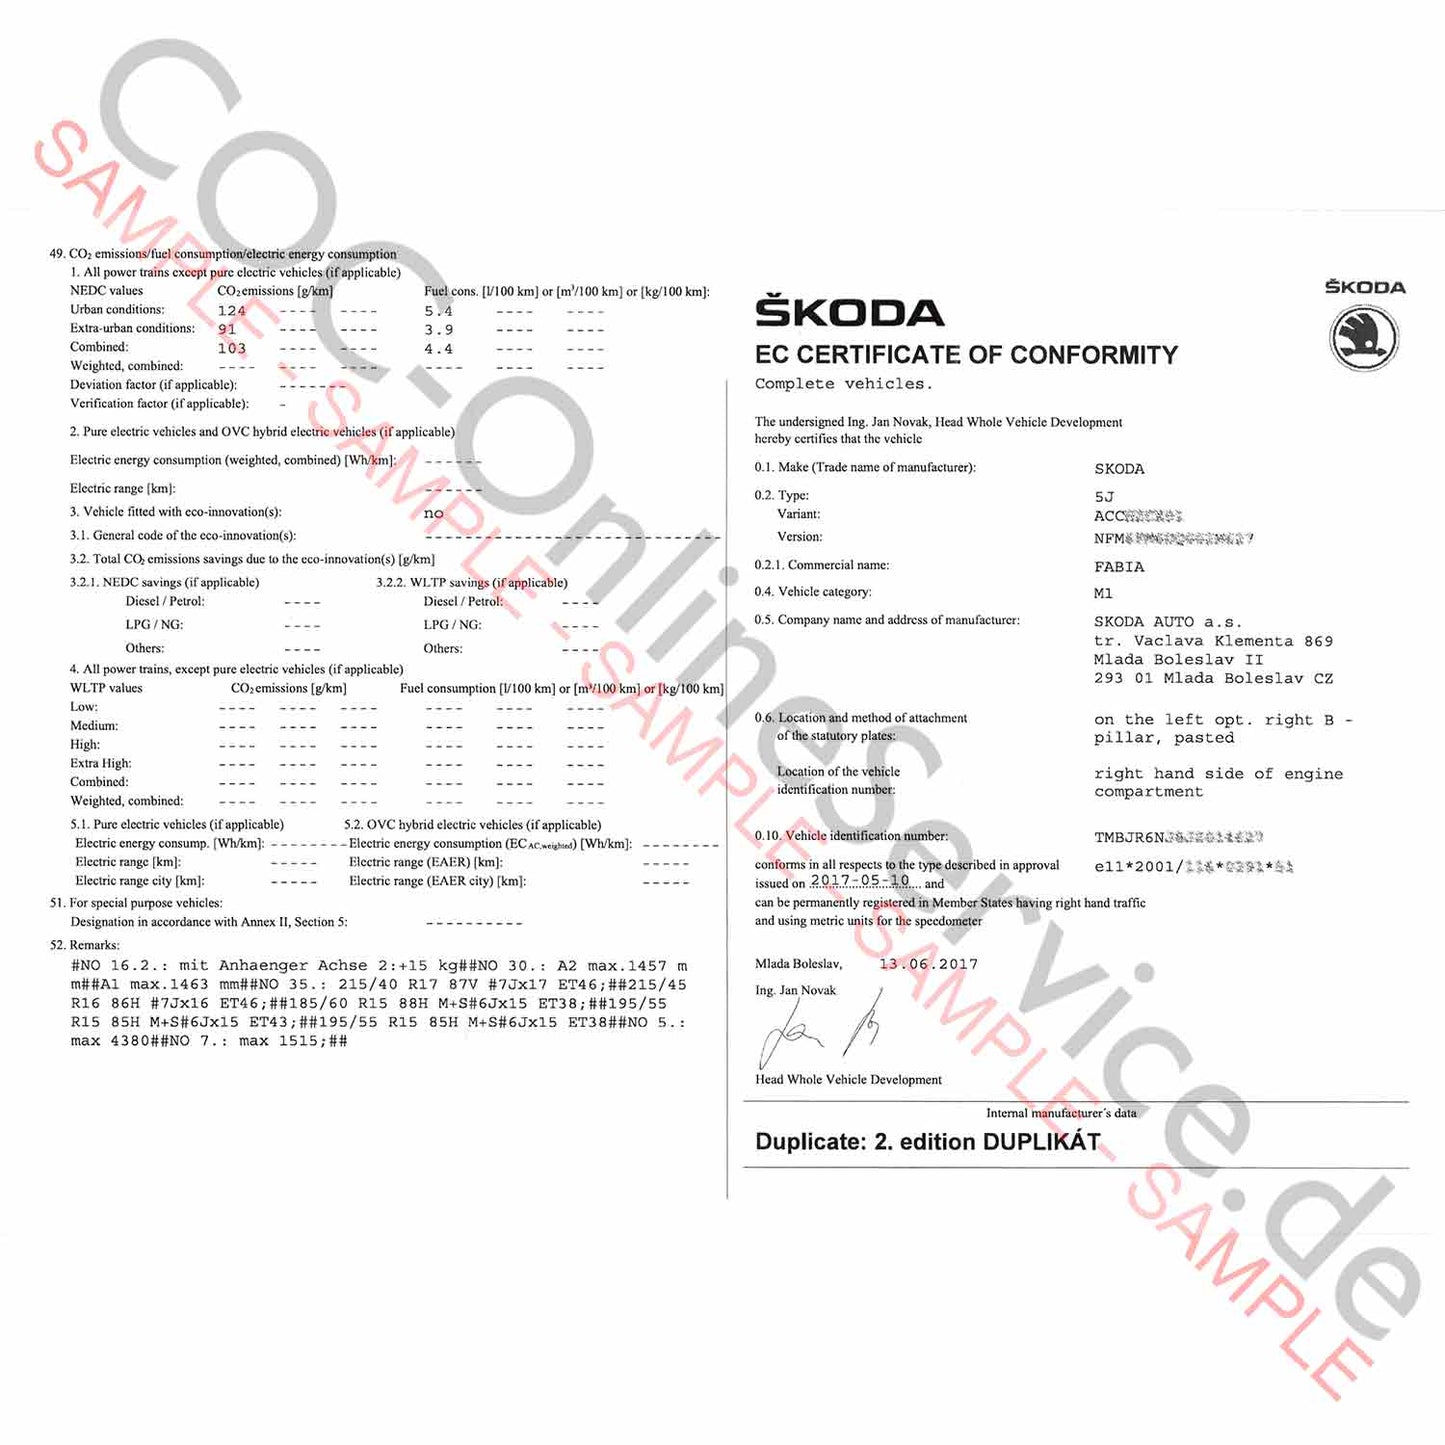 Document COC pour Skoda (certificat de conformité)